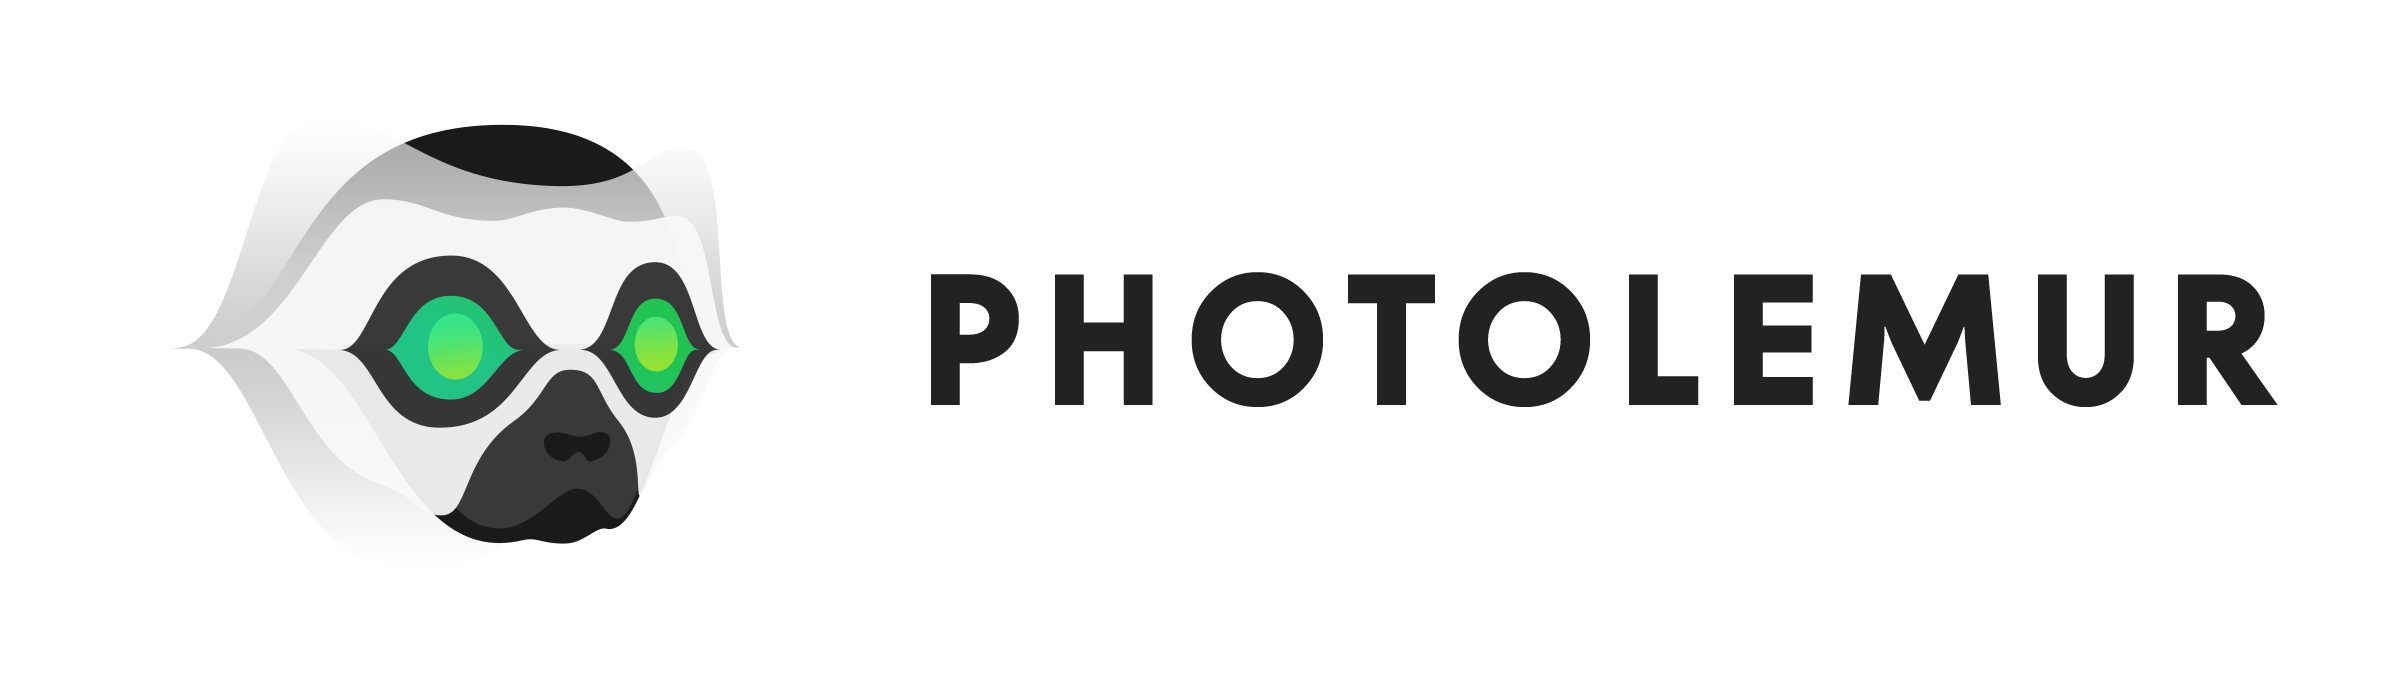 Photolemur New Automatic Photo Enhancement